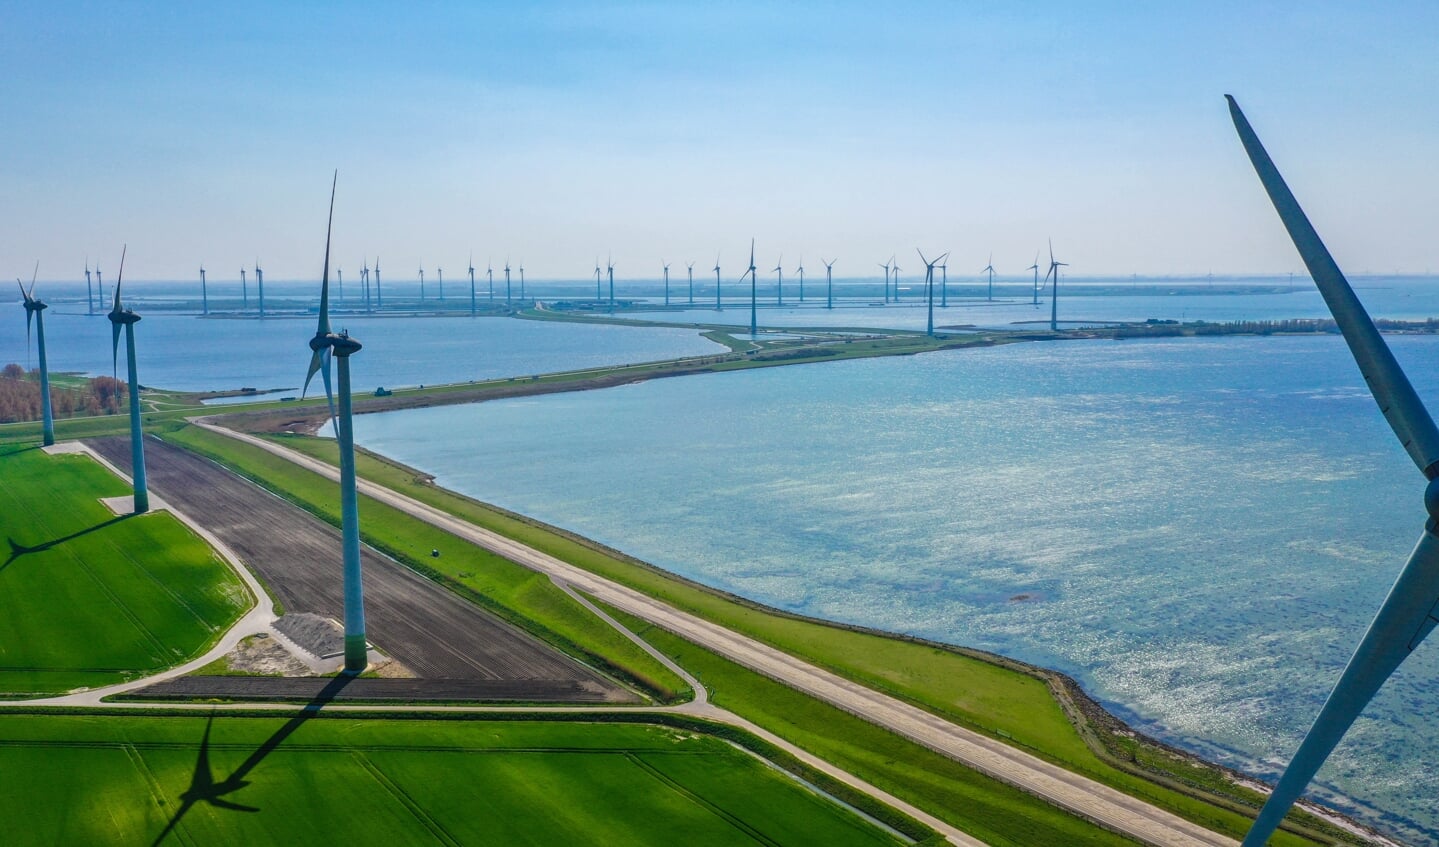 Luchtopname van de windmolens van Windpark Battenoert tussen Oude-Tonge en Nieuwe-Tonge, op de achtergrond is windpark Krammer zichtbaar. Foto: Bjorn Mierop